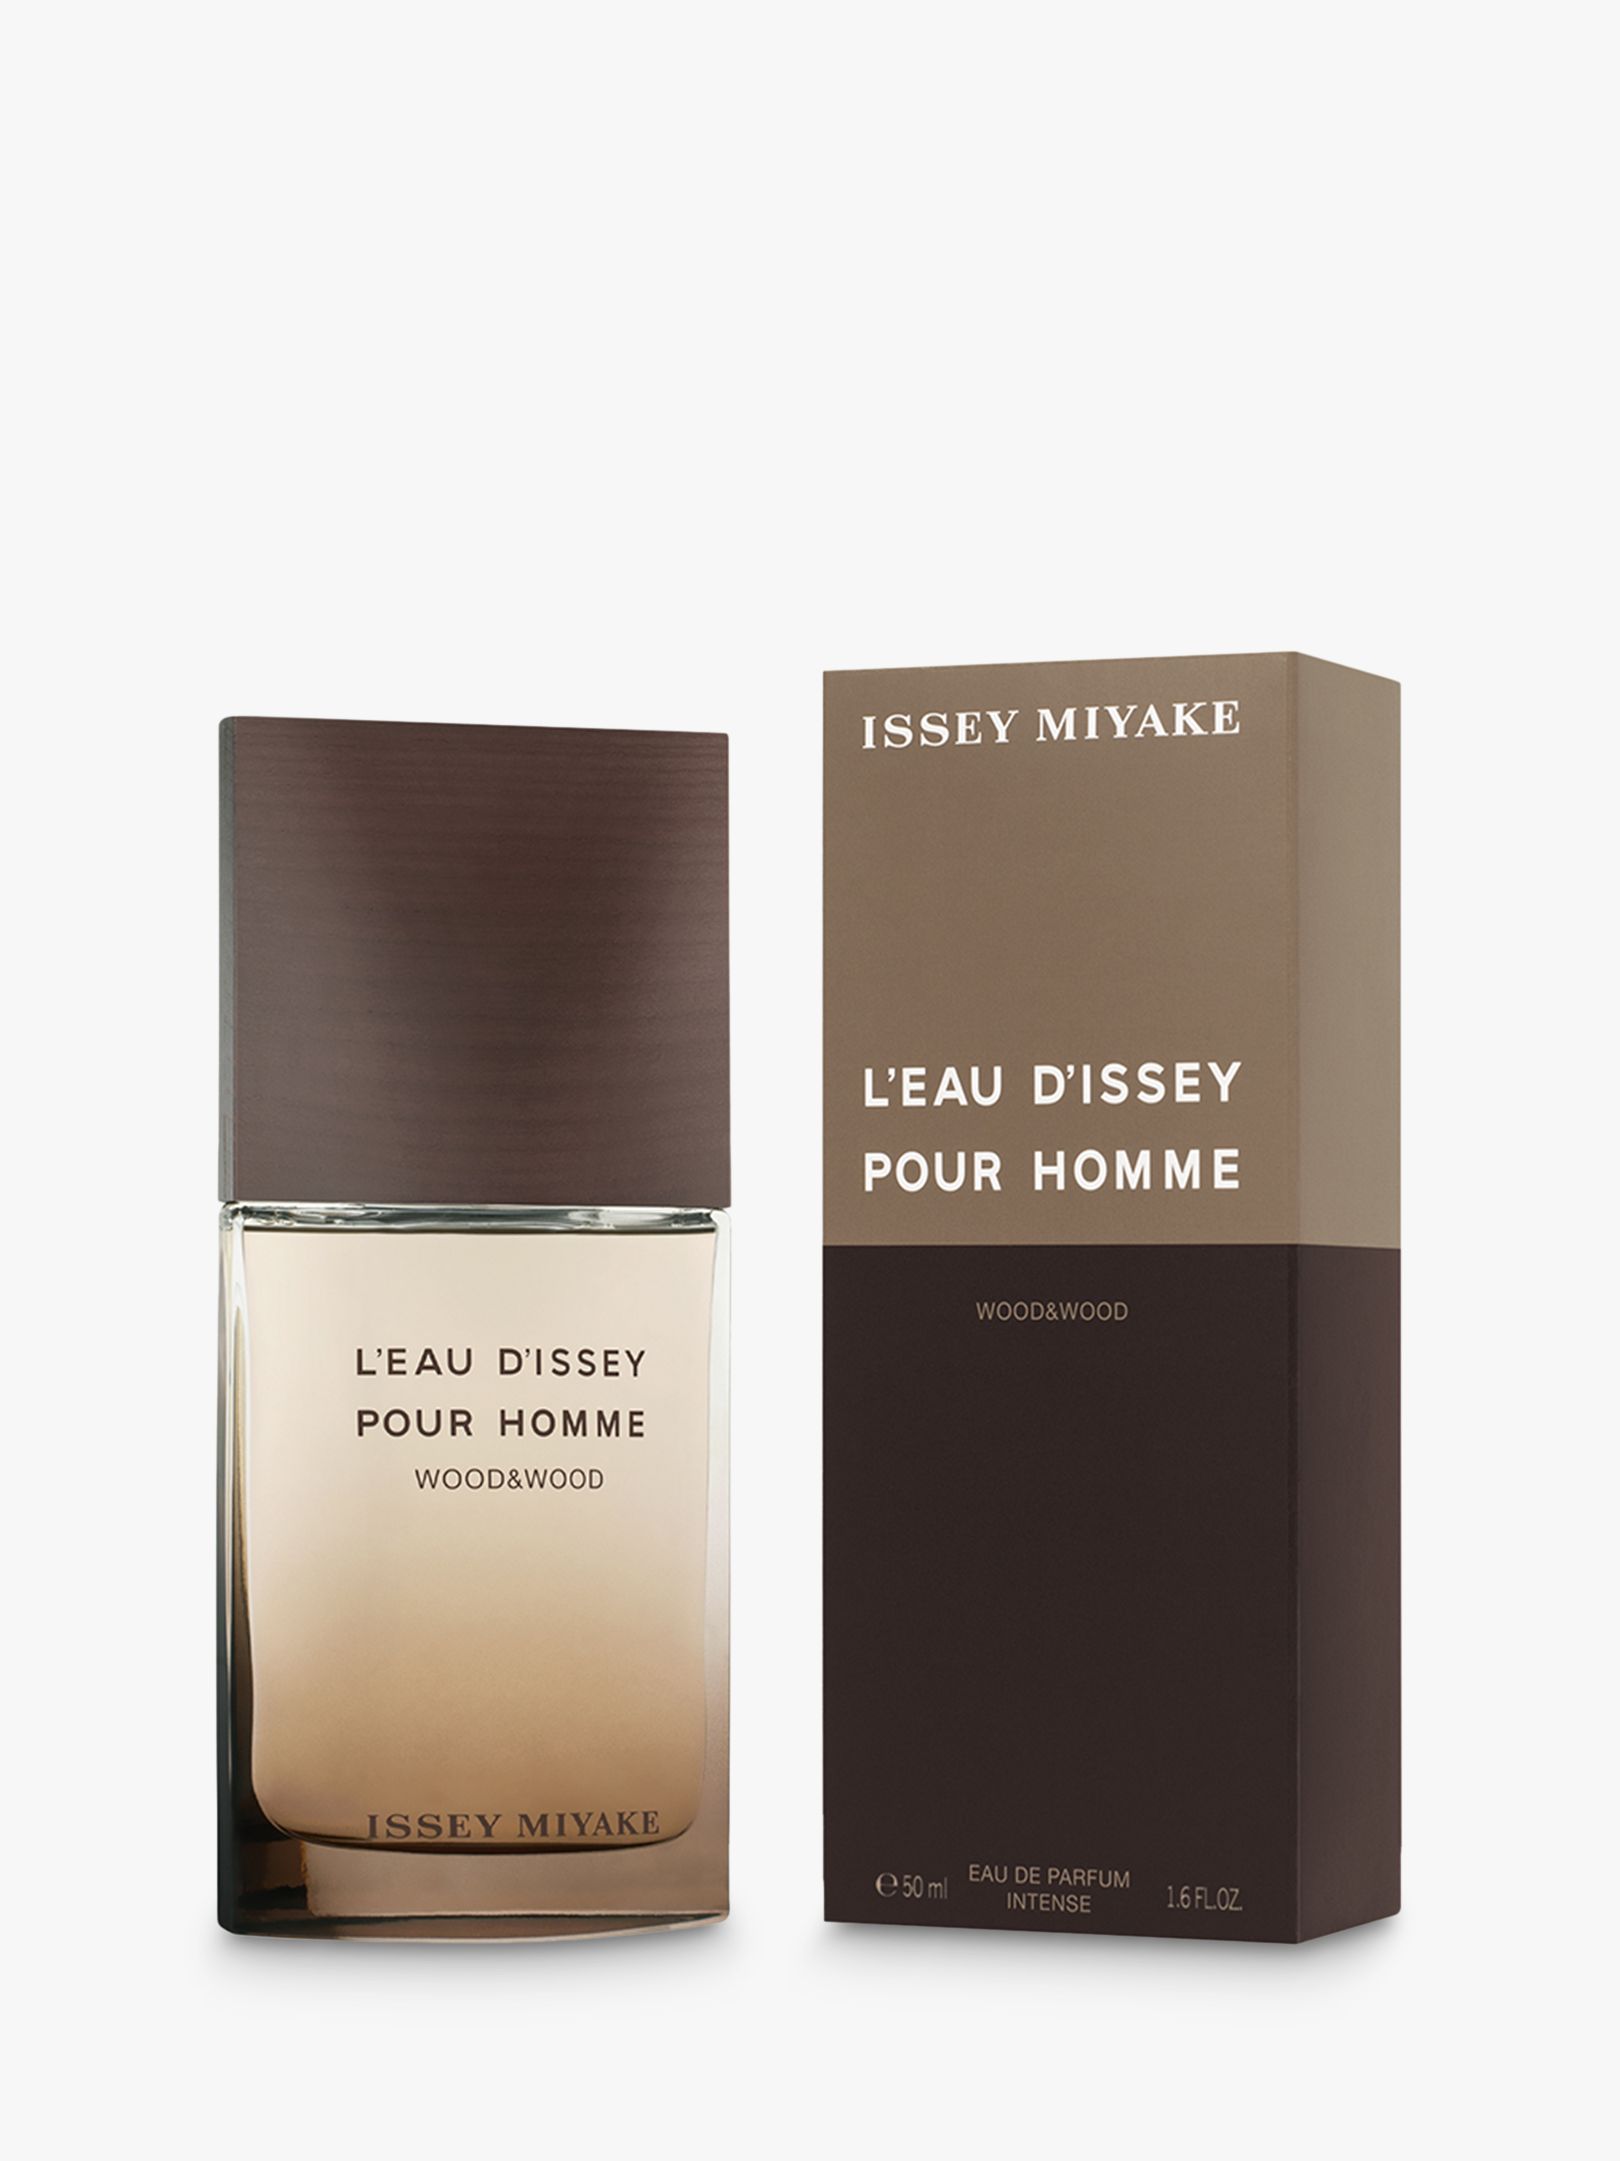 Issey Miyake L'Eau d'Issey Pour Homme Wood & Wood Eau de Parfum Intense, 50ml